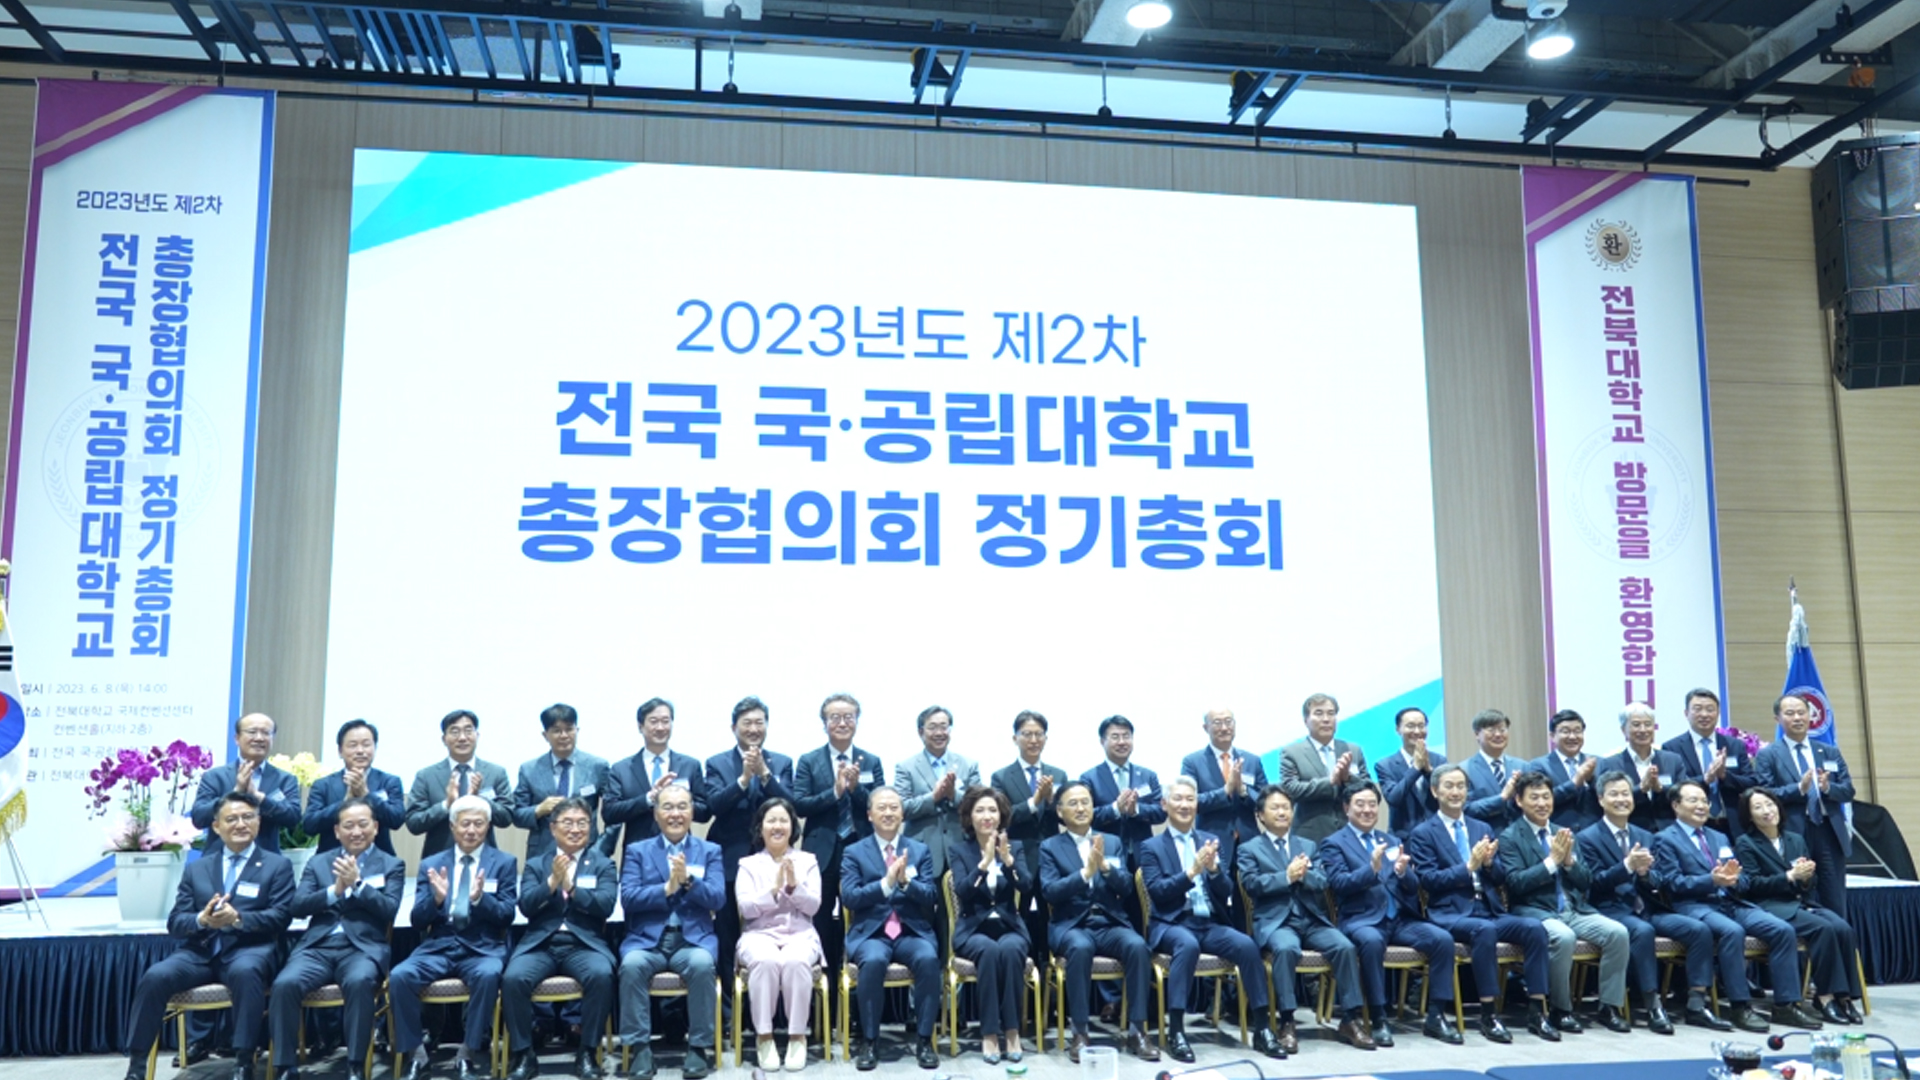 국·공립 총장협의회 전북대에서 열려